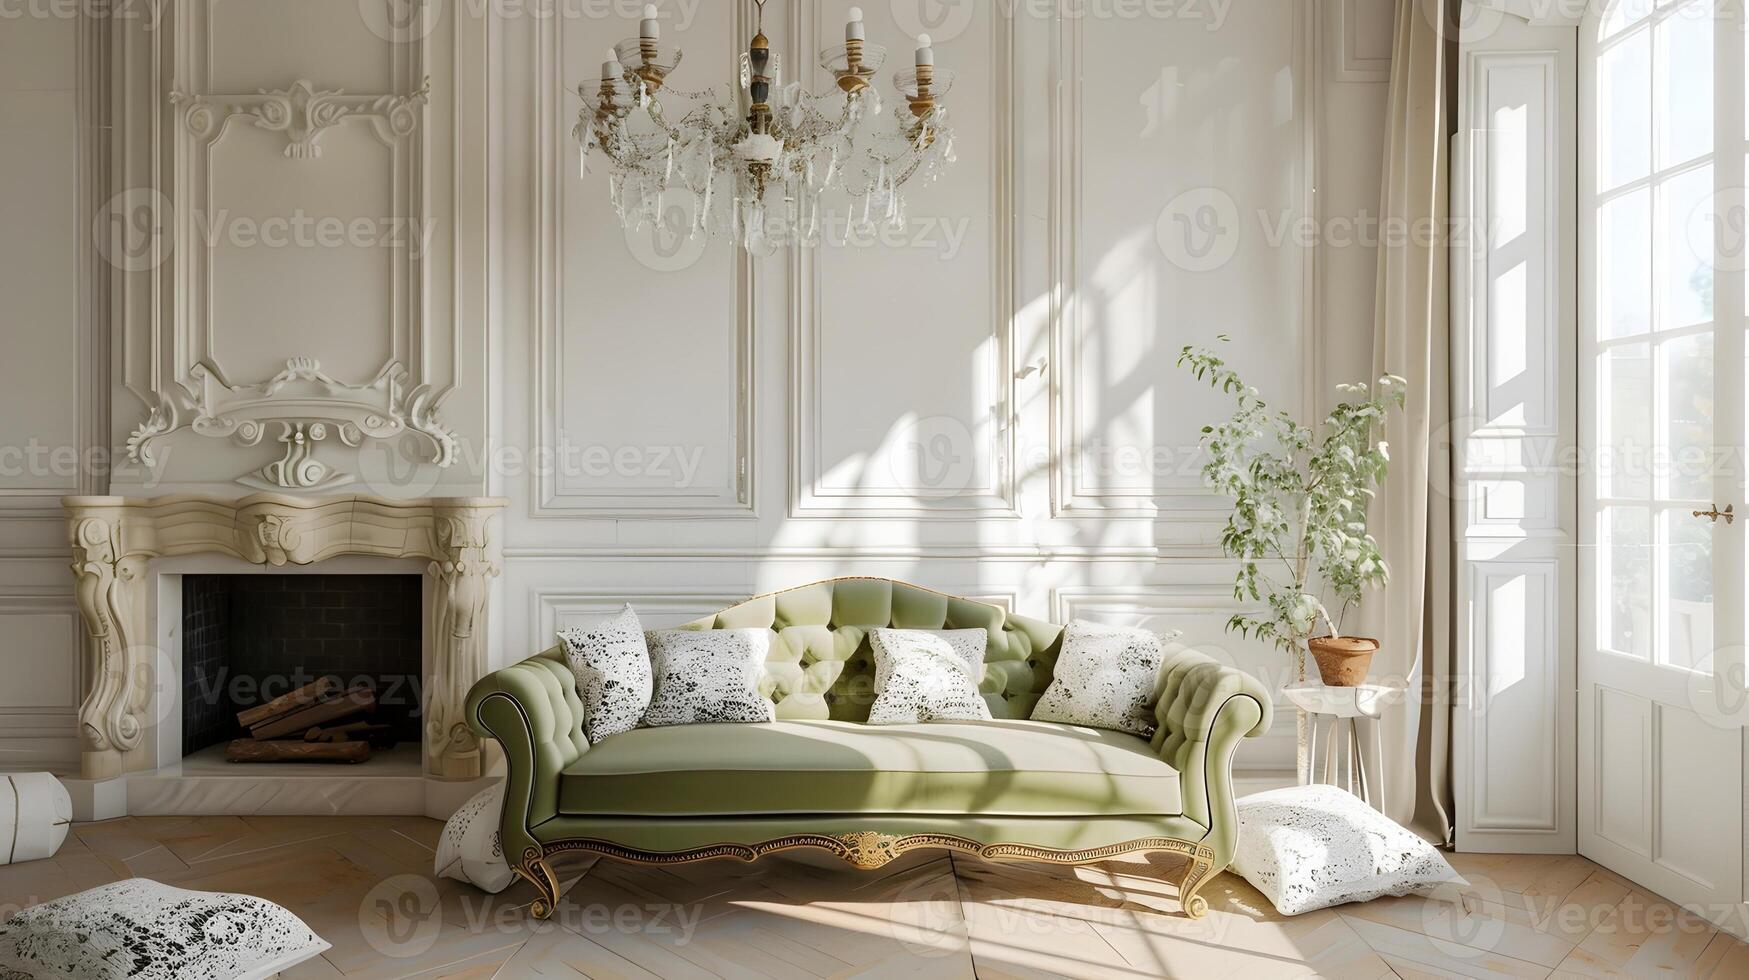 élégant et raffiné intérieurs de une luxueux, vieux de plusieurs siècles Manoir avec fleuri architectural détails et opulent ameublement photo